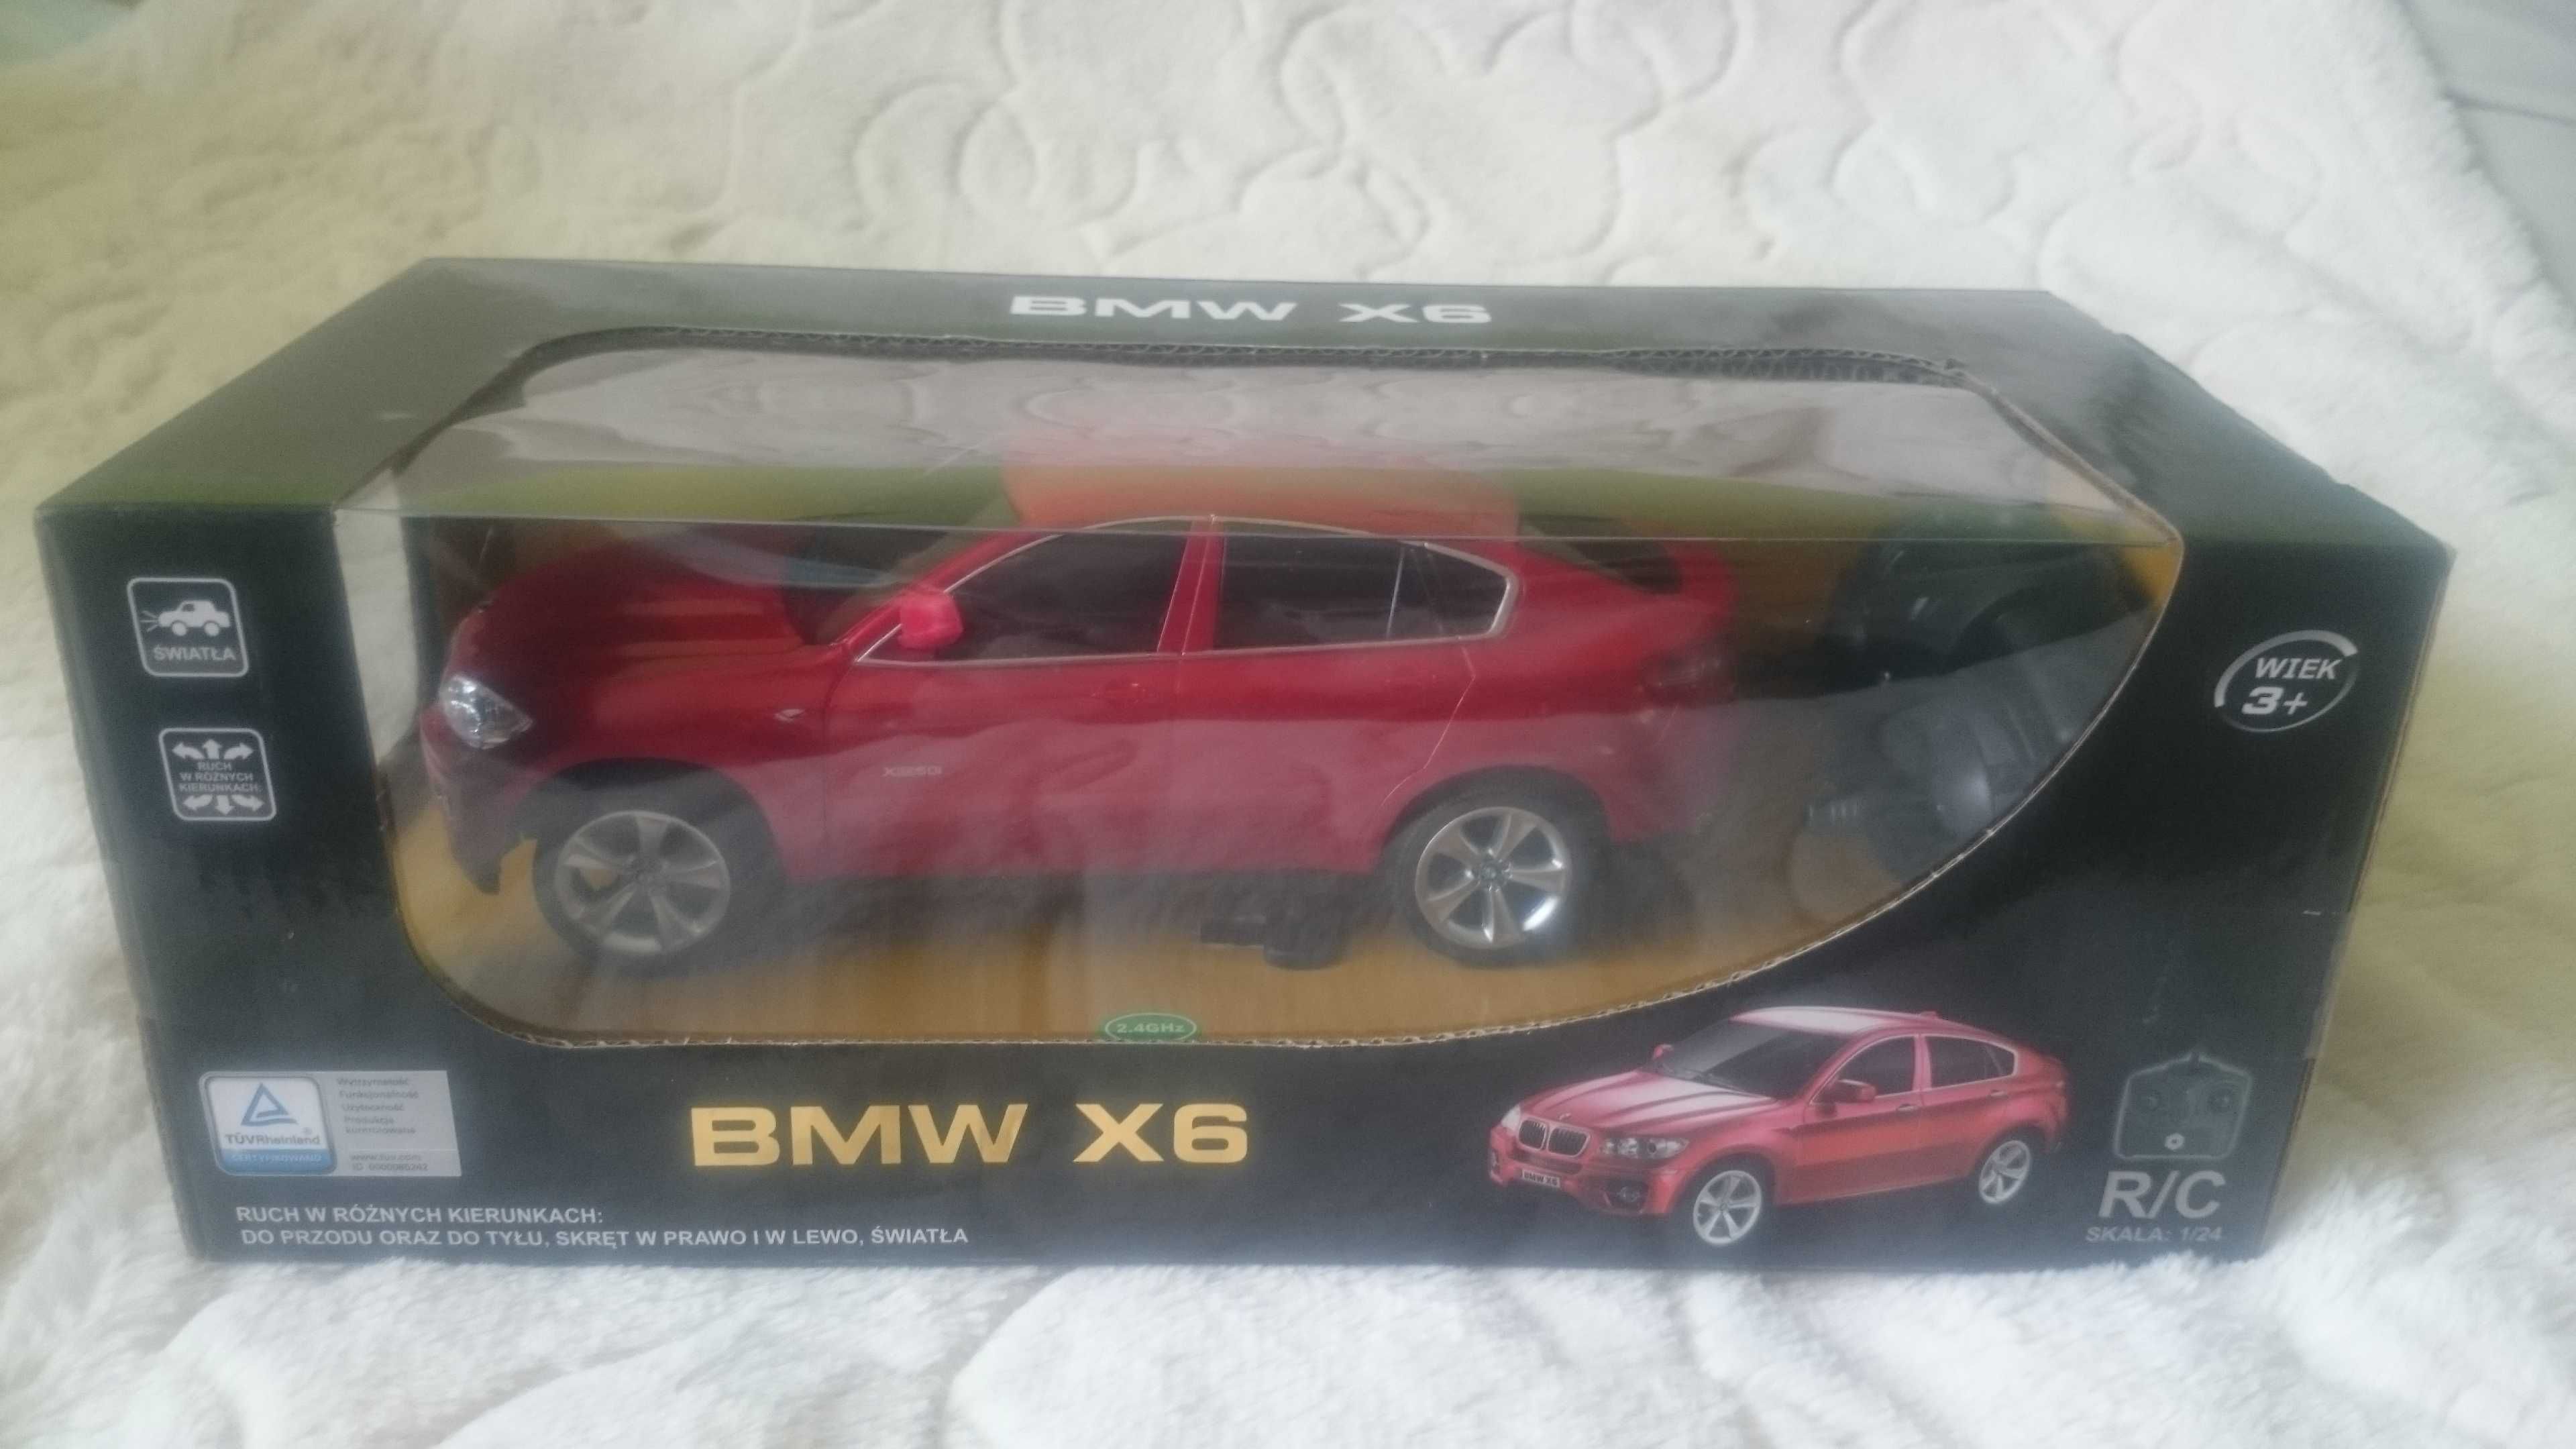 Nowy samochód BMW X6 zdanie sterowany czerwony R/C skala 1:24